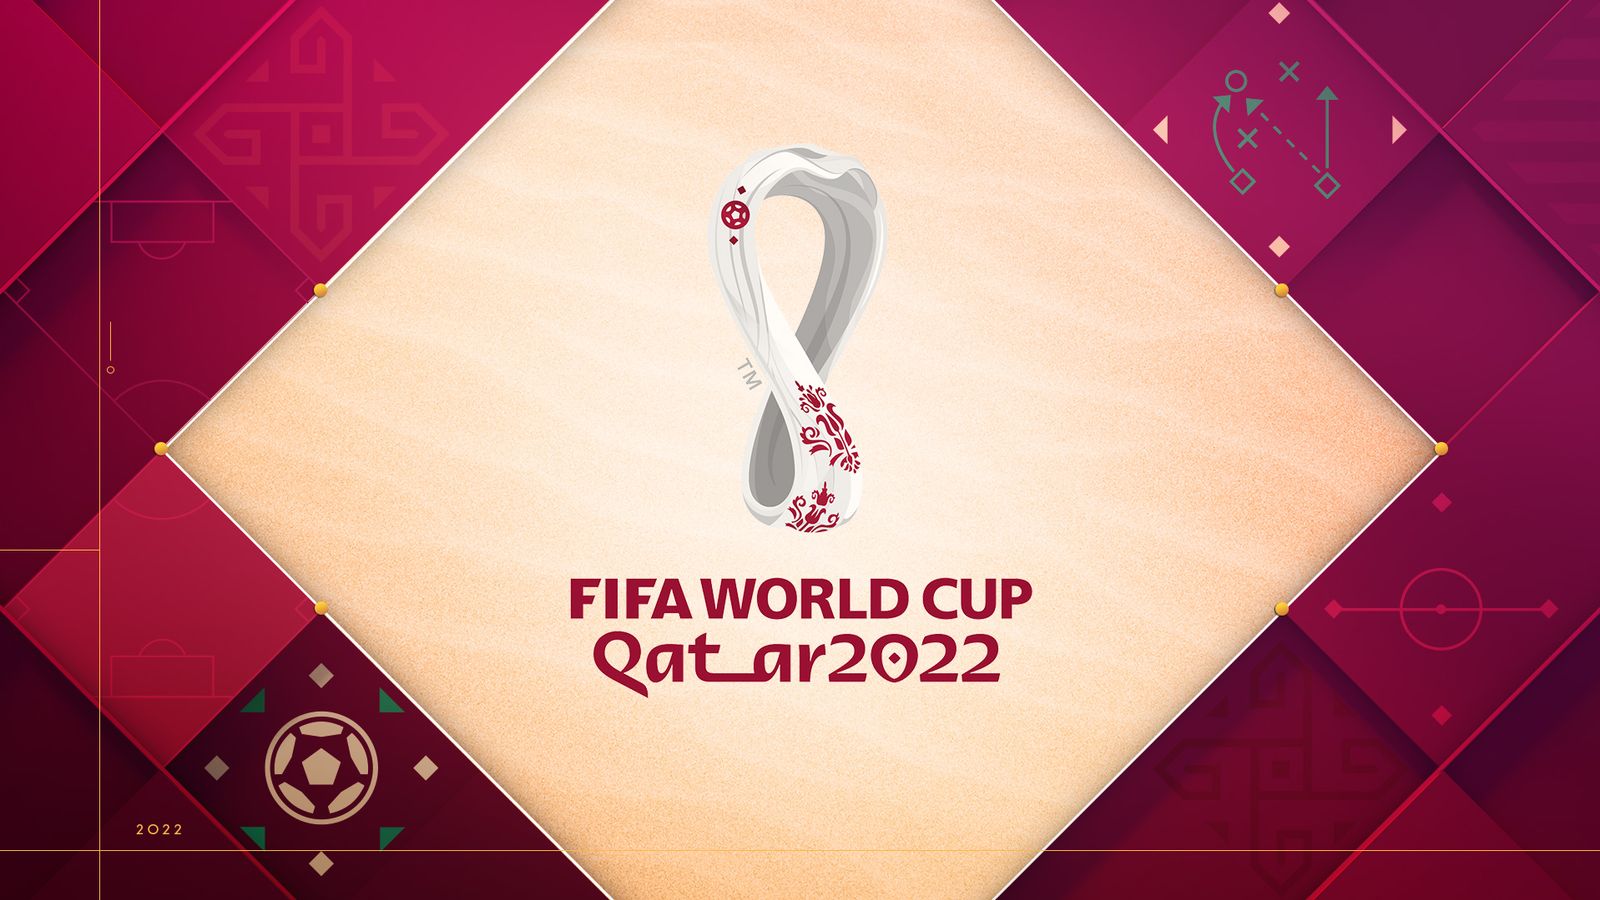 Jadwal Lengkap Piala Dunia Qatar 2022, Fase Grup hingga Final, Simak Pertandingan Timnas Jagoan Kamu di Sini